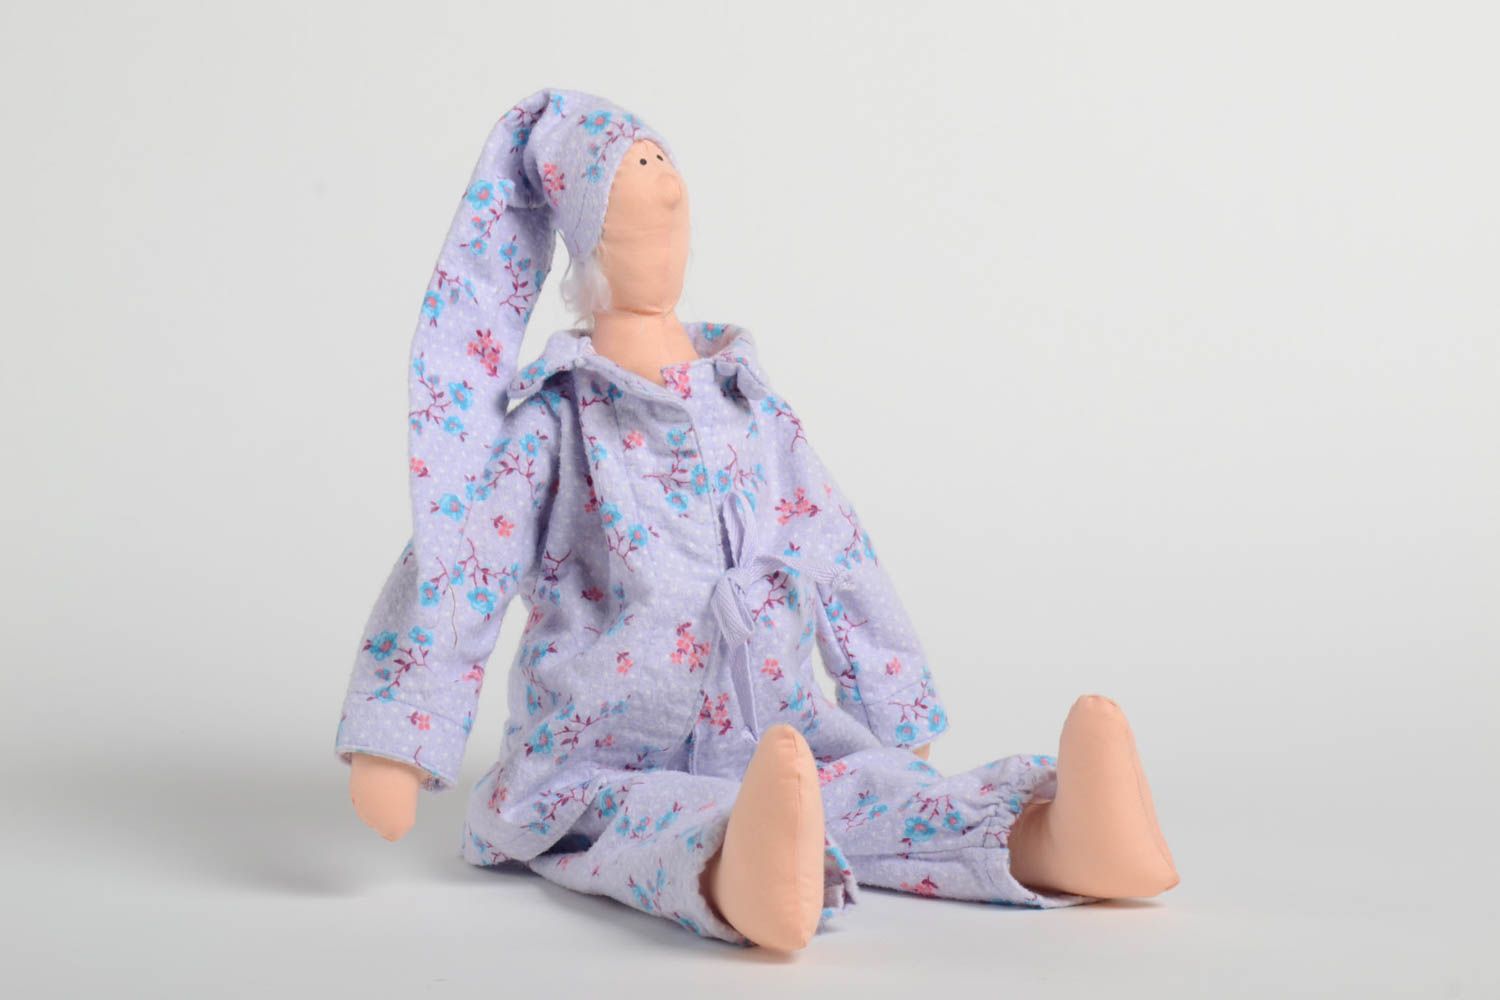 Авторская мягкая интерьерная кукла из натуральных материалов для декора дома фото 2